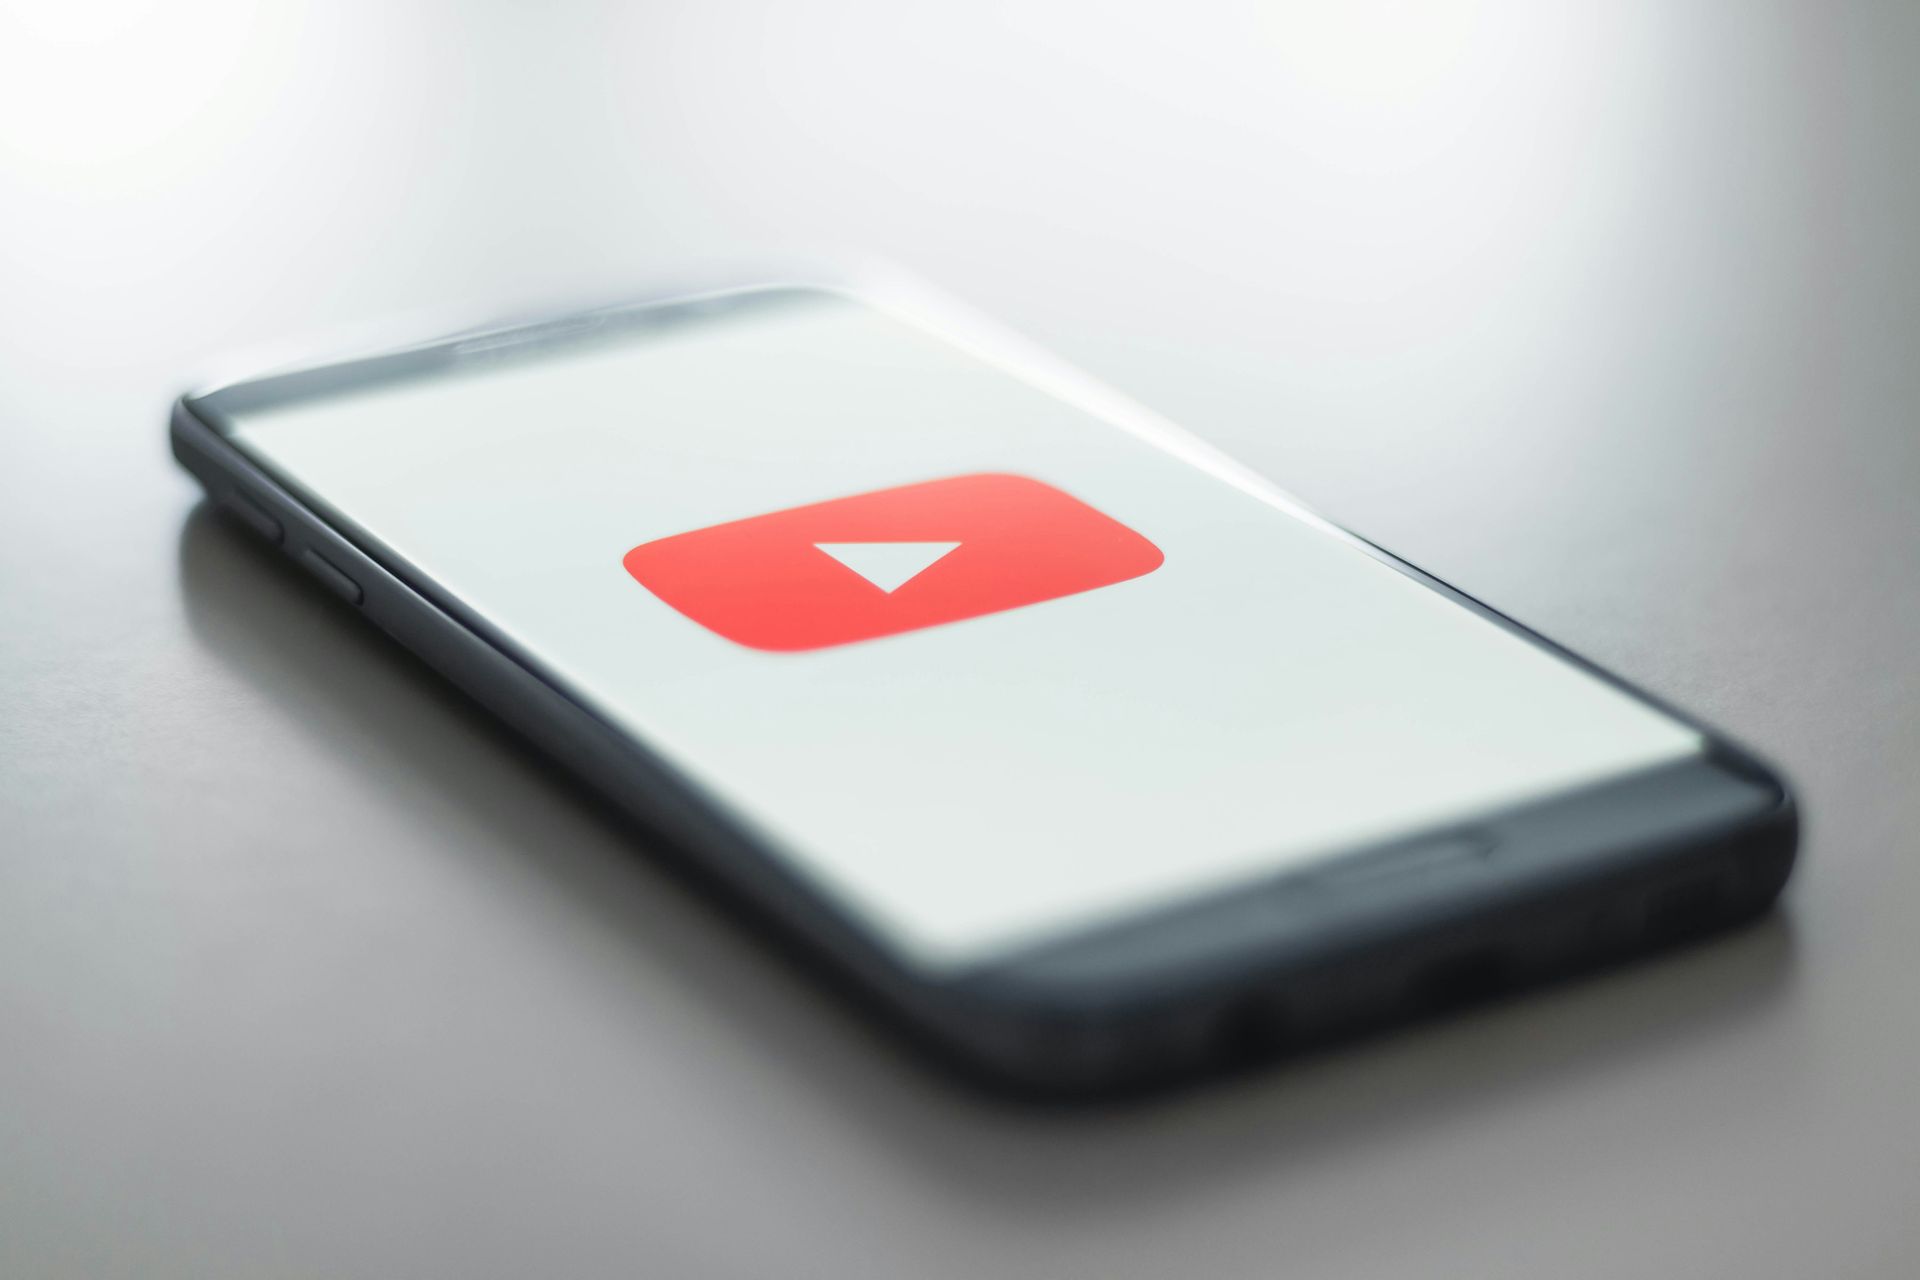 YouTube Premium offre nuove funzionalità e piani per migliorare l'esperienza utente